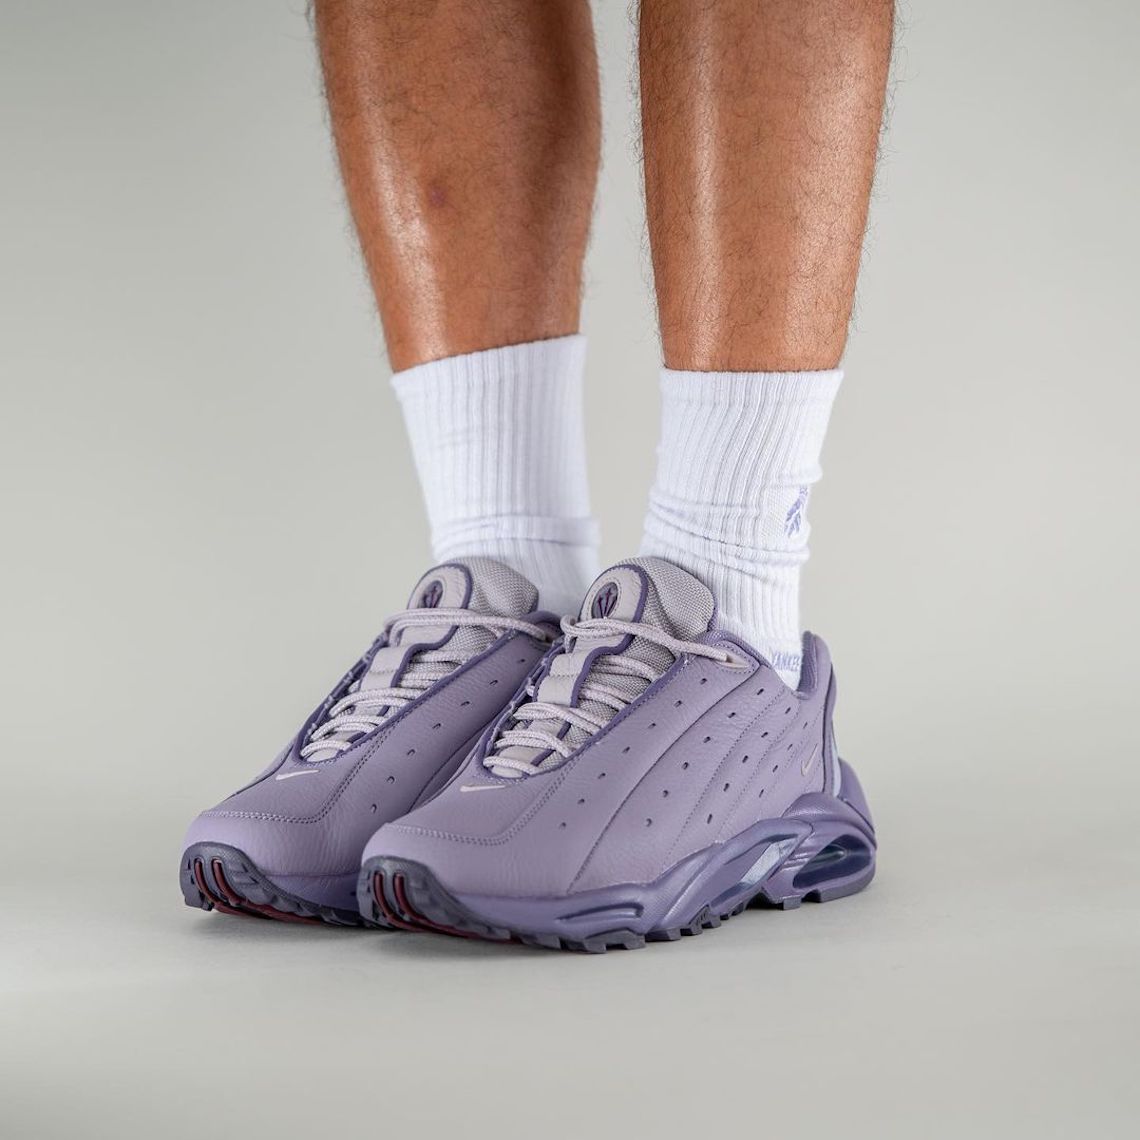 NOCTA Nike Hot Step Air Terra Purple DH4692 500 8